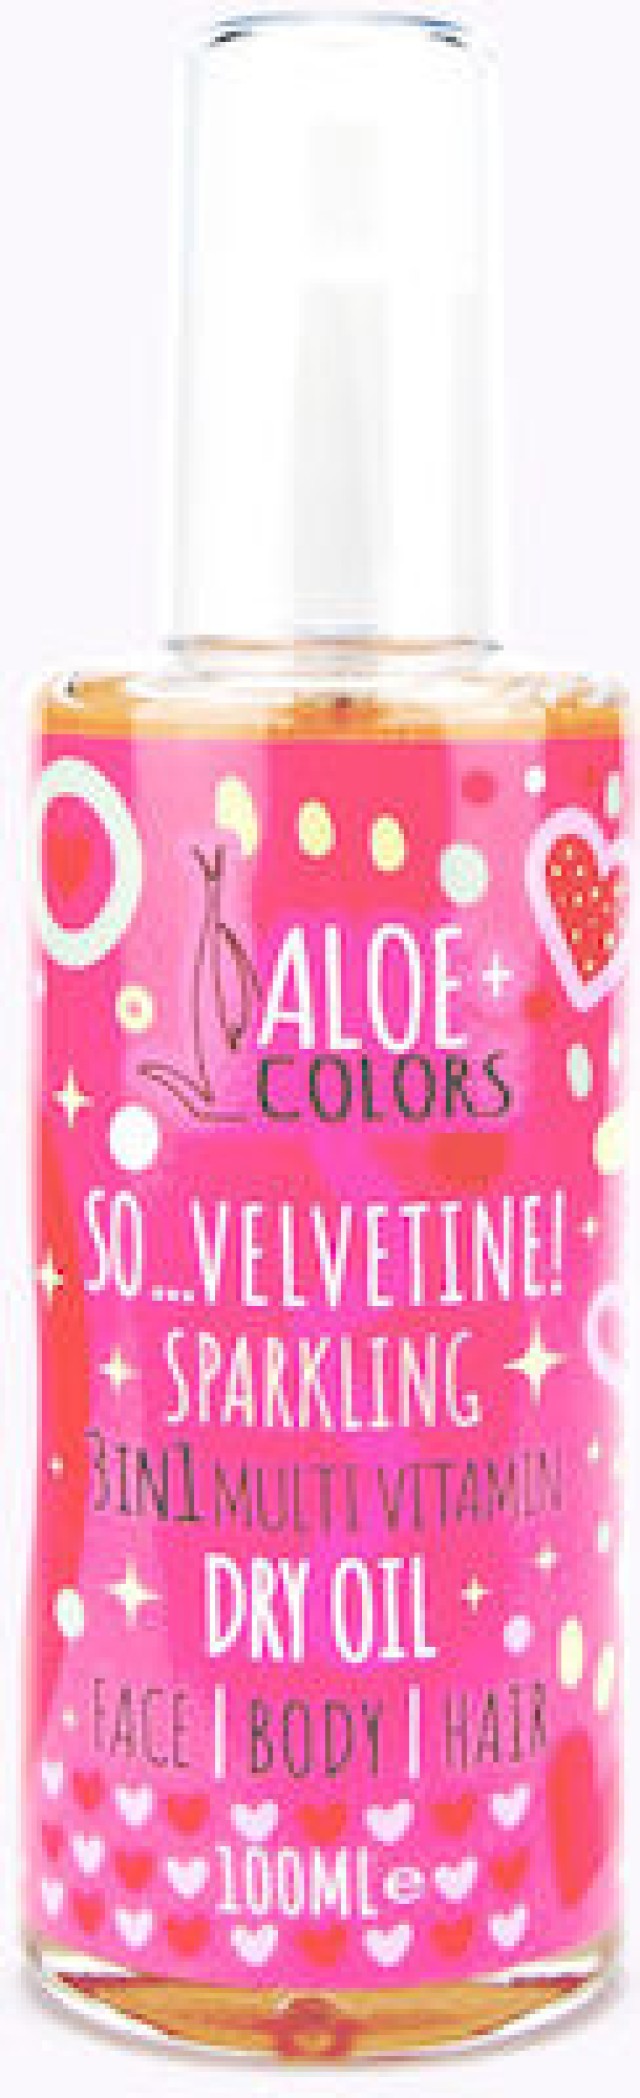 Aloe+ Colors So Velvetine! Sparkling 3in1 Multi-Vitamin Dry Oil Ιριδίζον Ξηρό Λάδι, 100ml